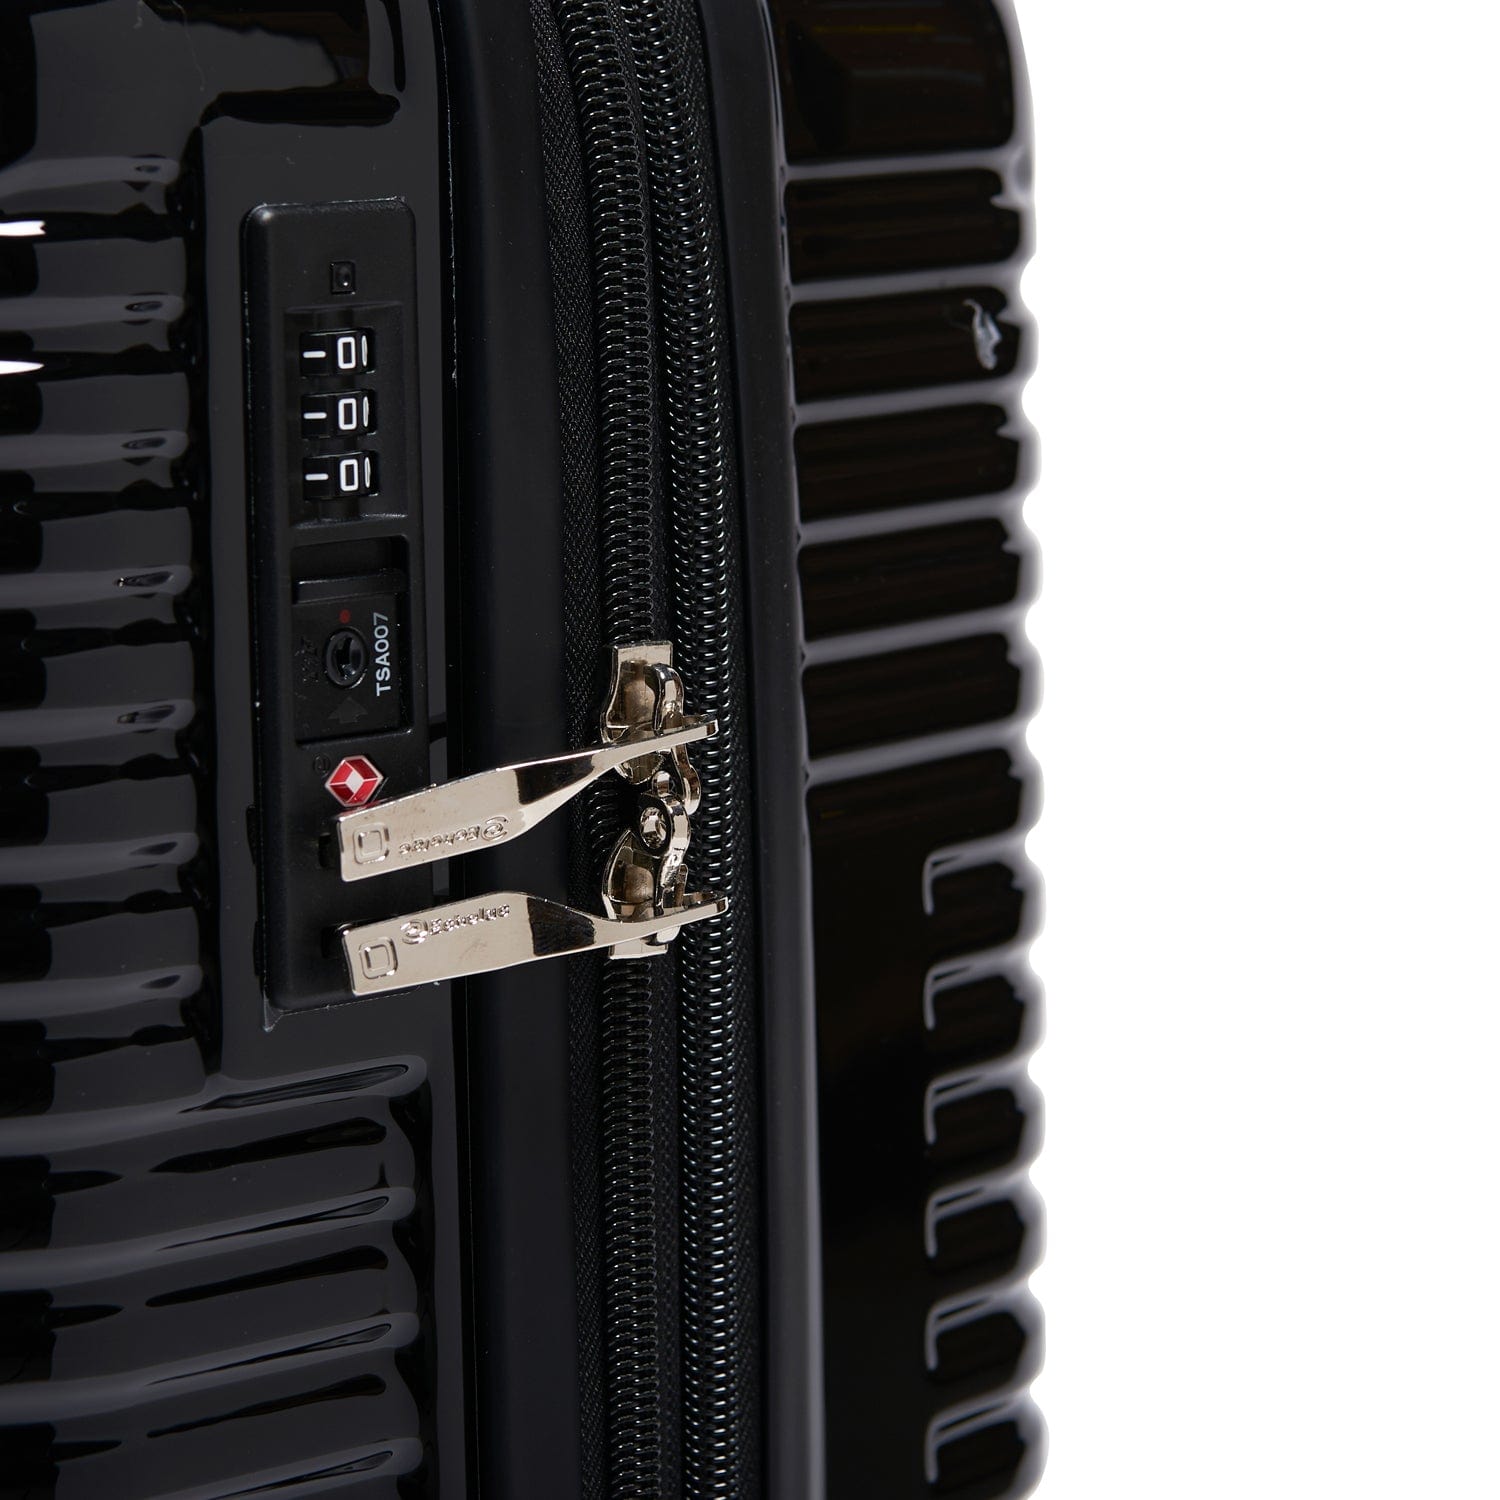 إيكولاك حقيبة سفر فاخرة 71 سم قابلة للتوسيع 4 عجلات مزدوجة تسجيل الوصول - أسود - CTH0062 S- 20 BLACK